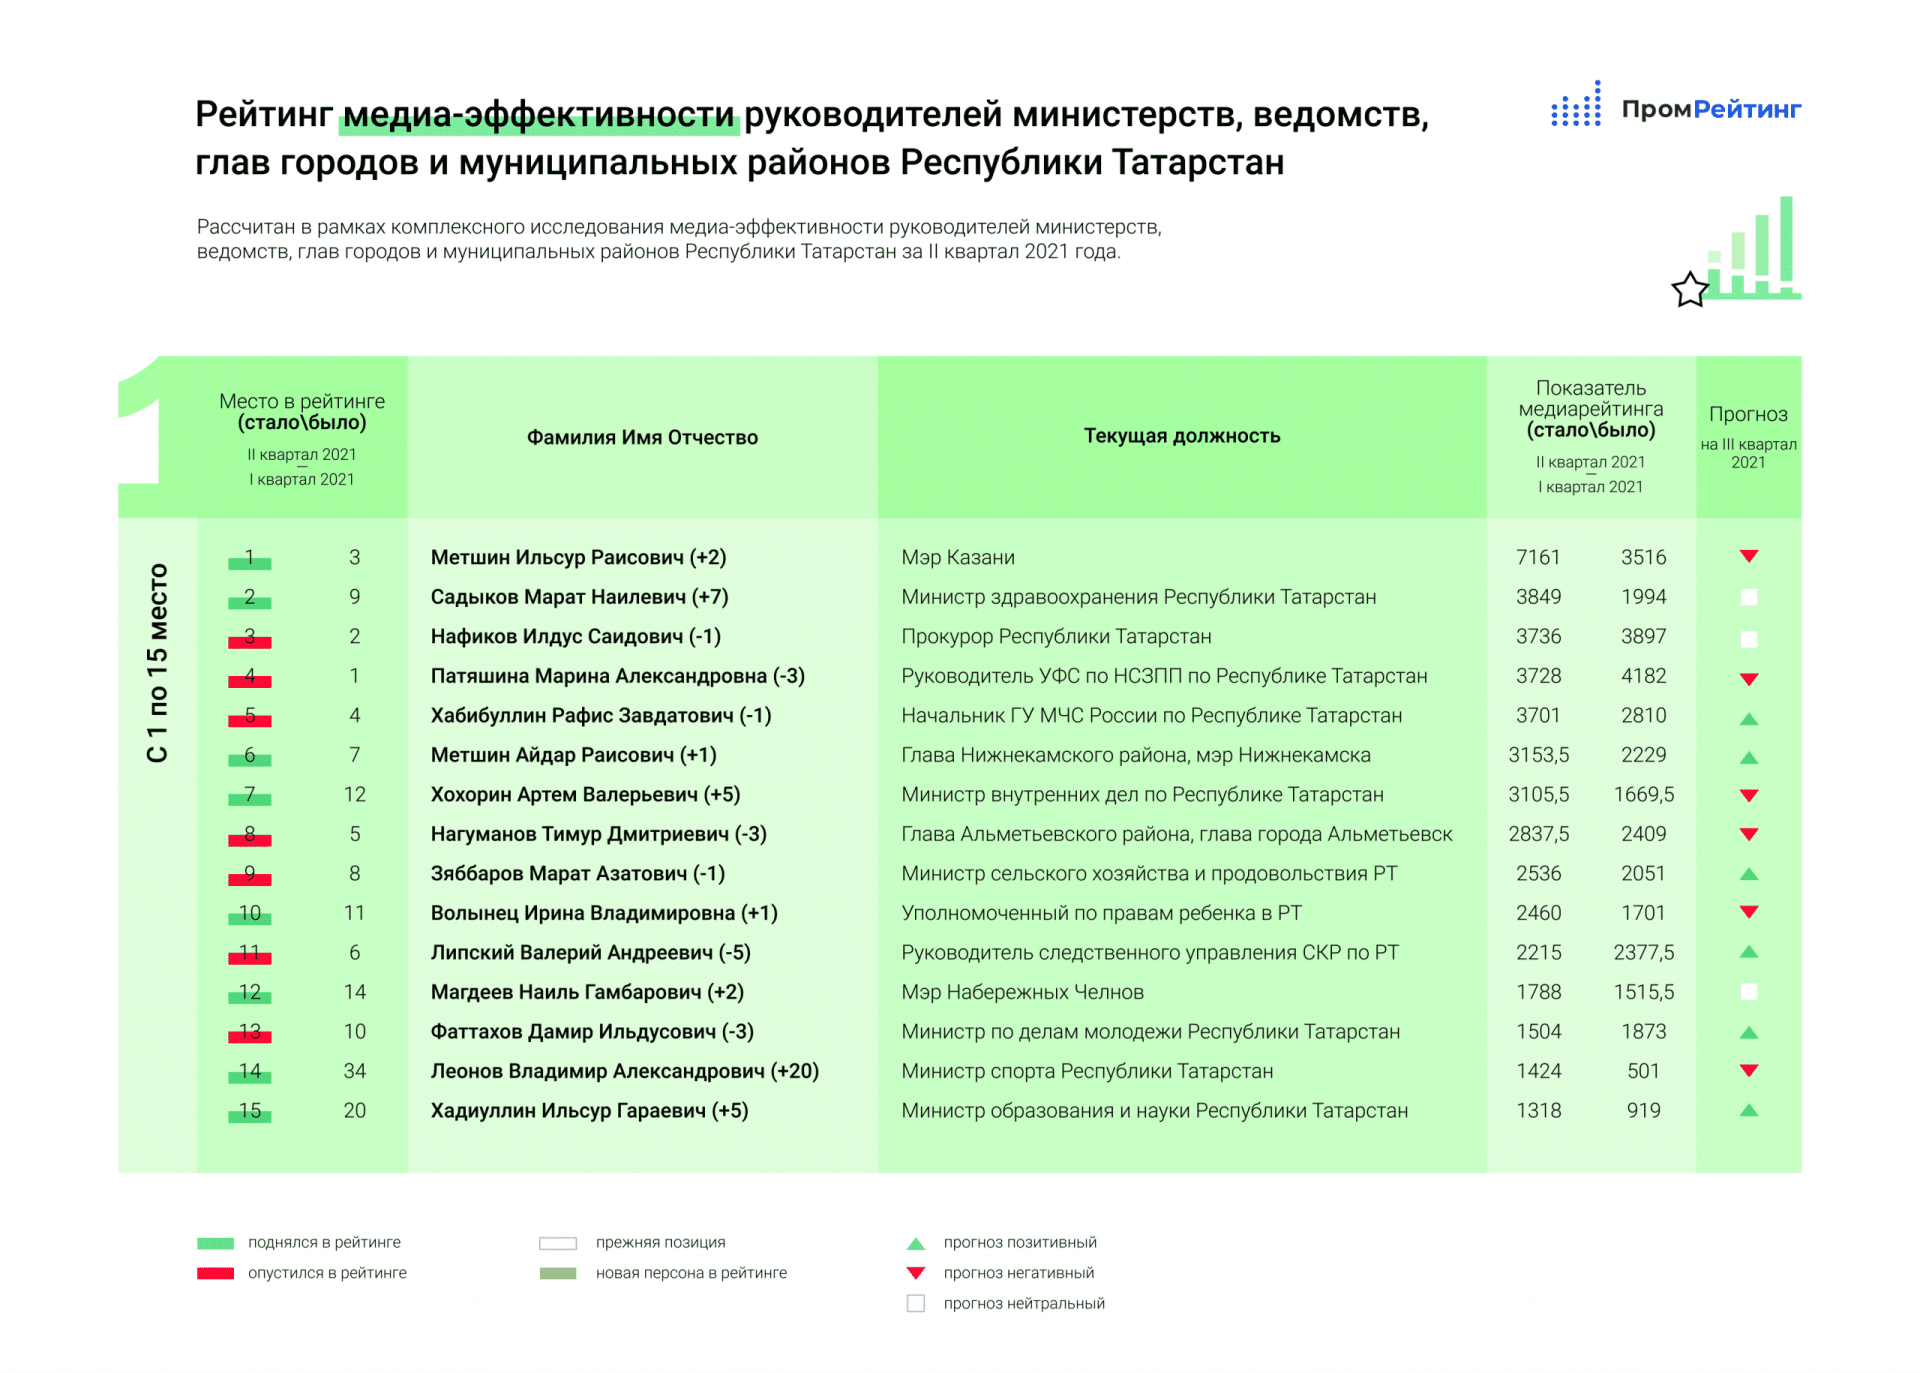 В Татарстане мэр Казани, глава Минздрава и прокурор признаны самыми медиаэффективными руководителями